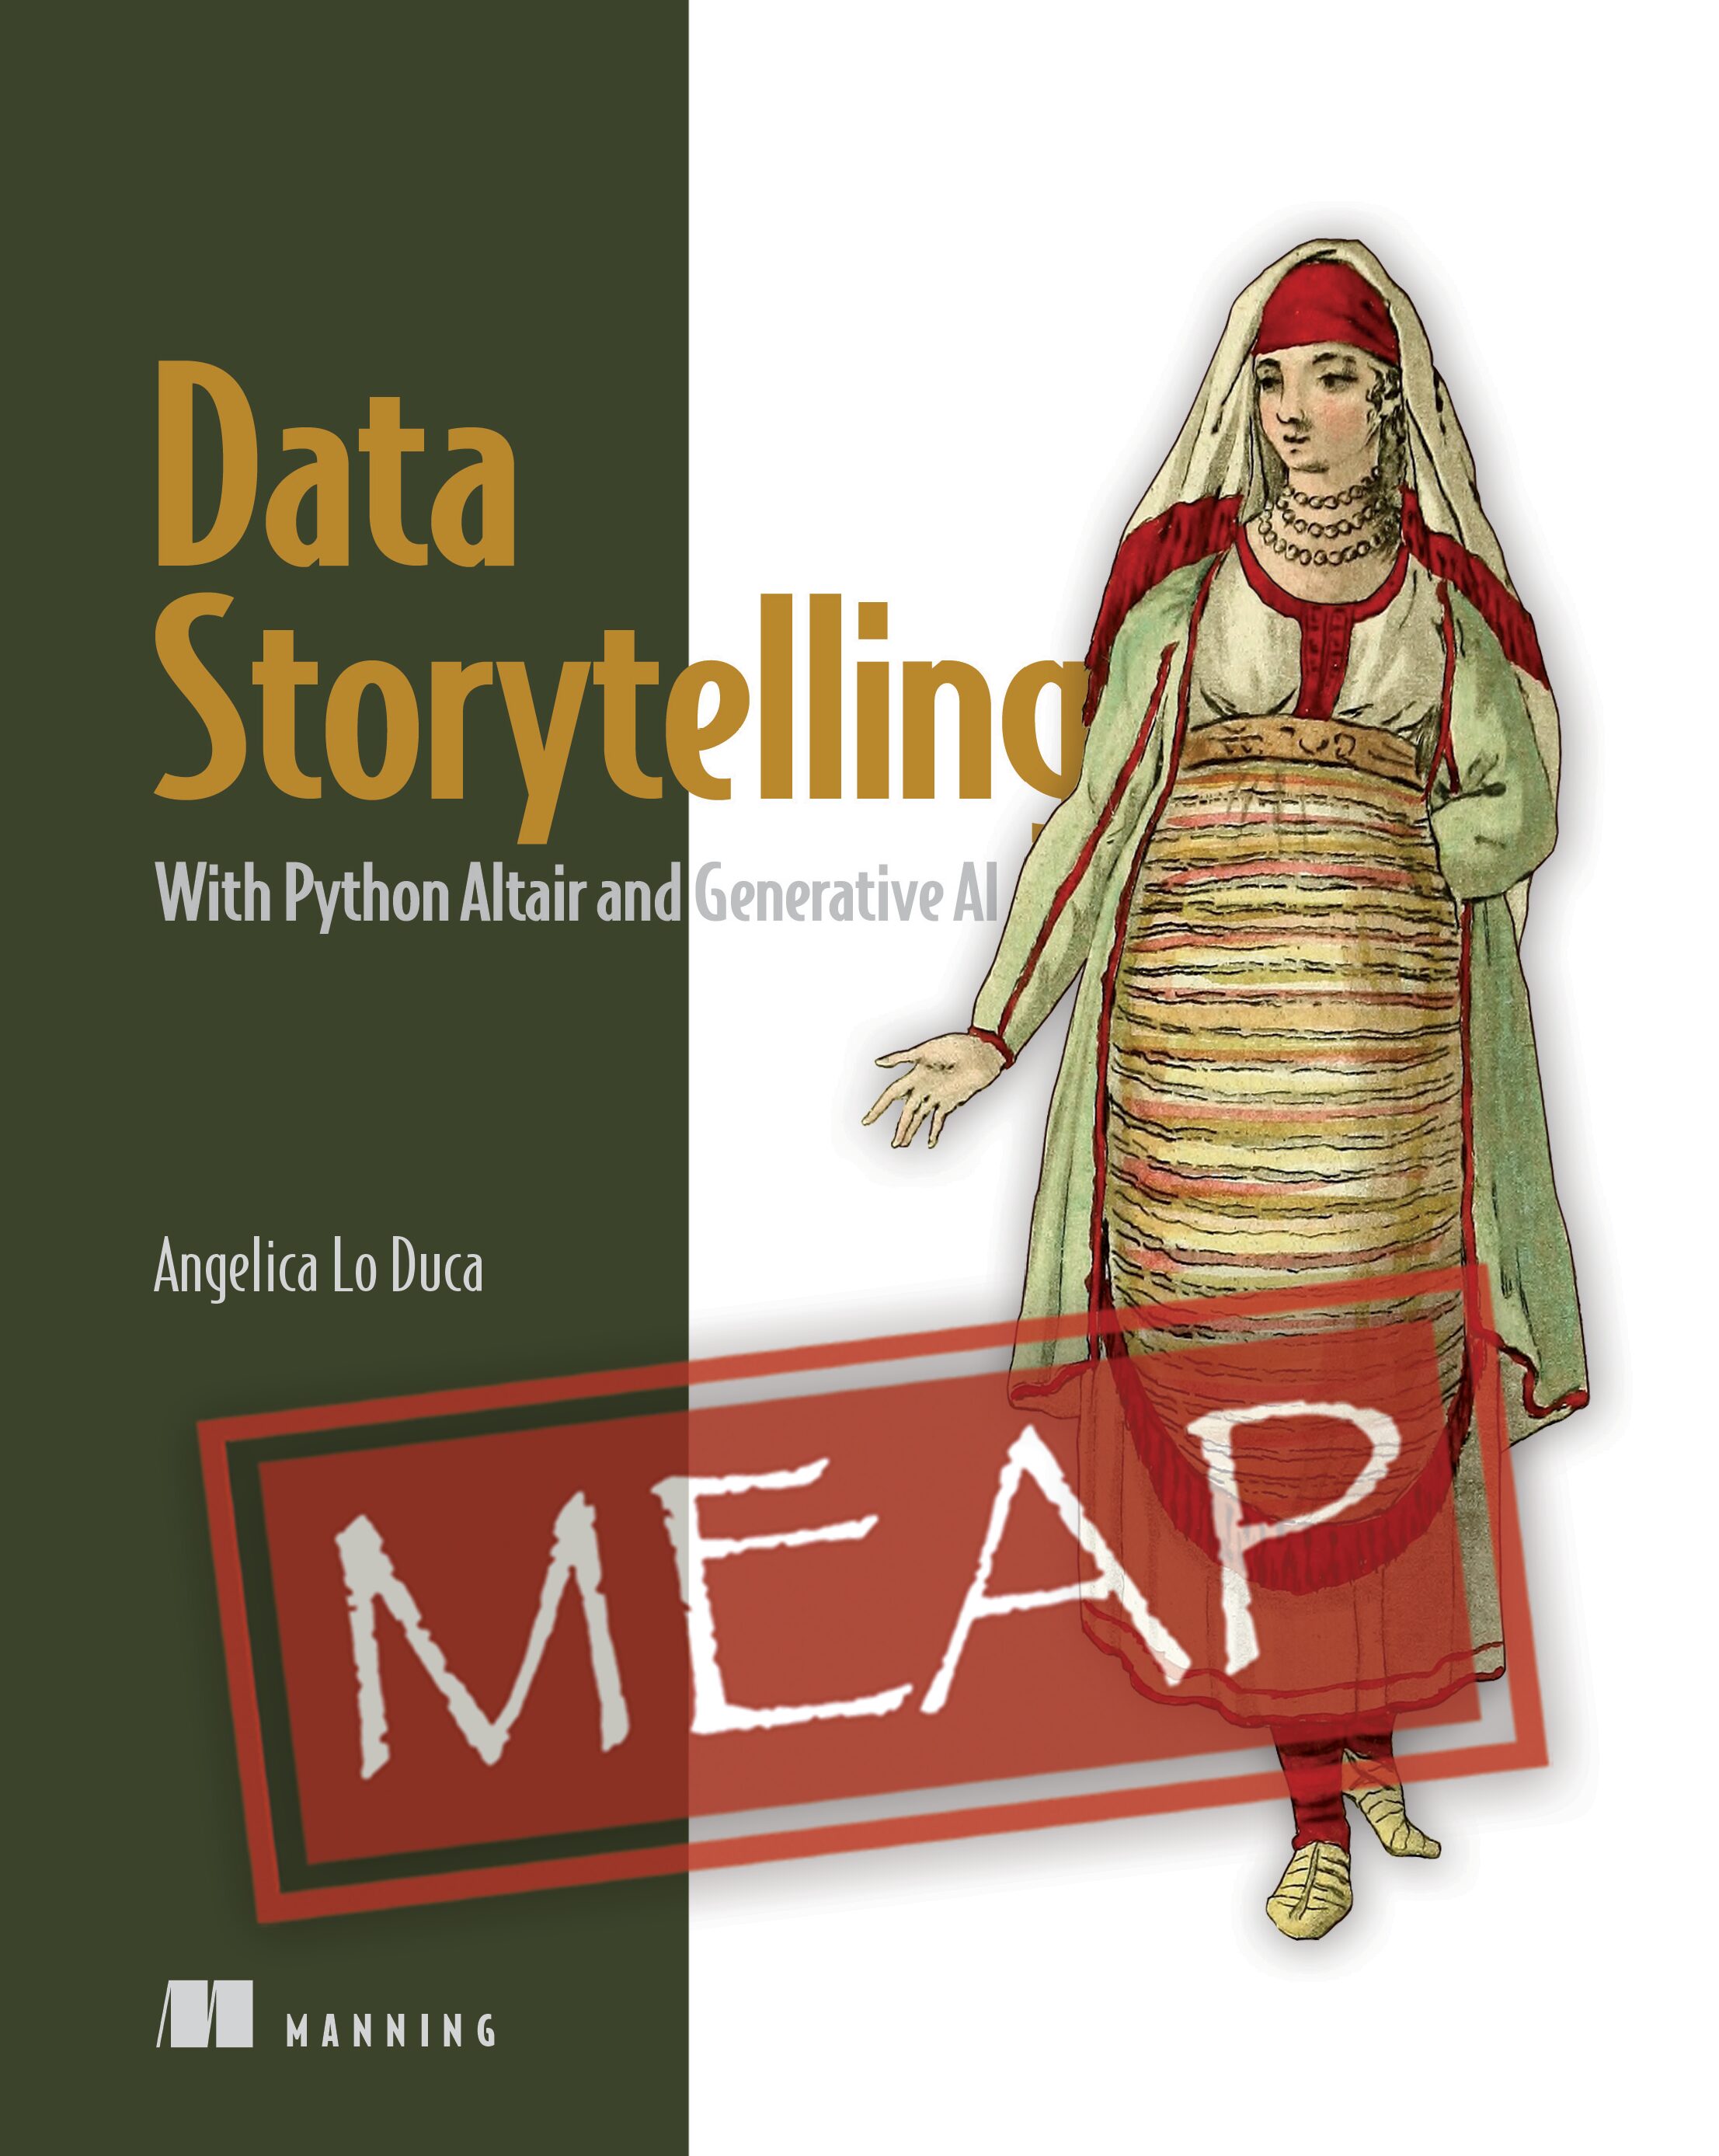 Data storytelling - the art of telling stories through data